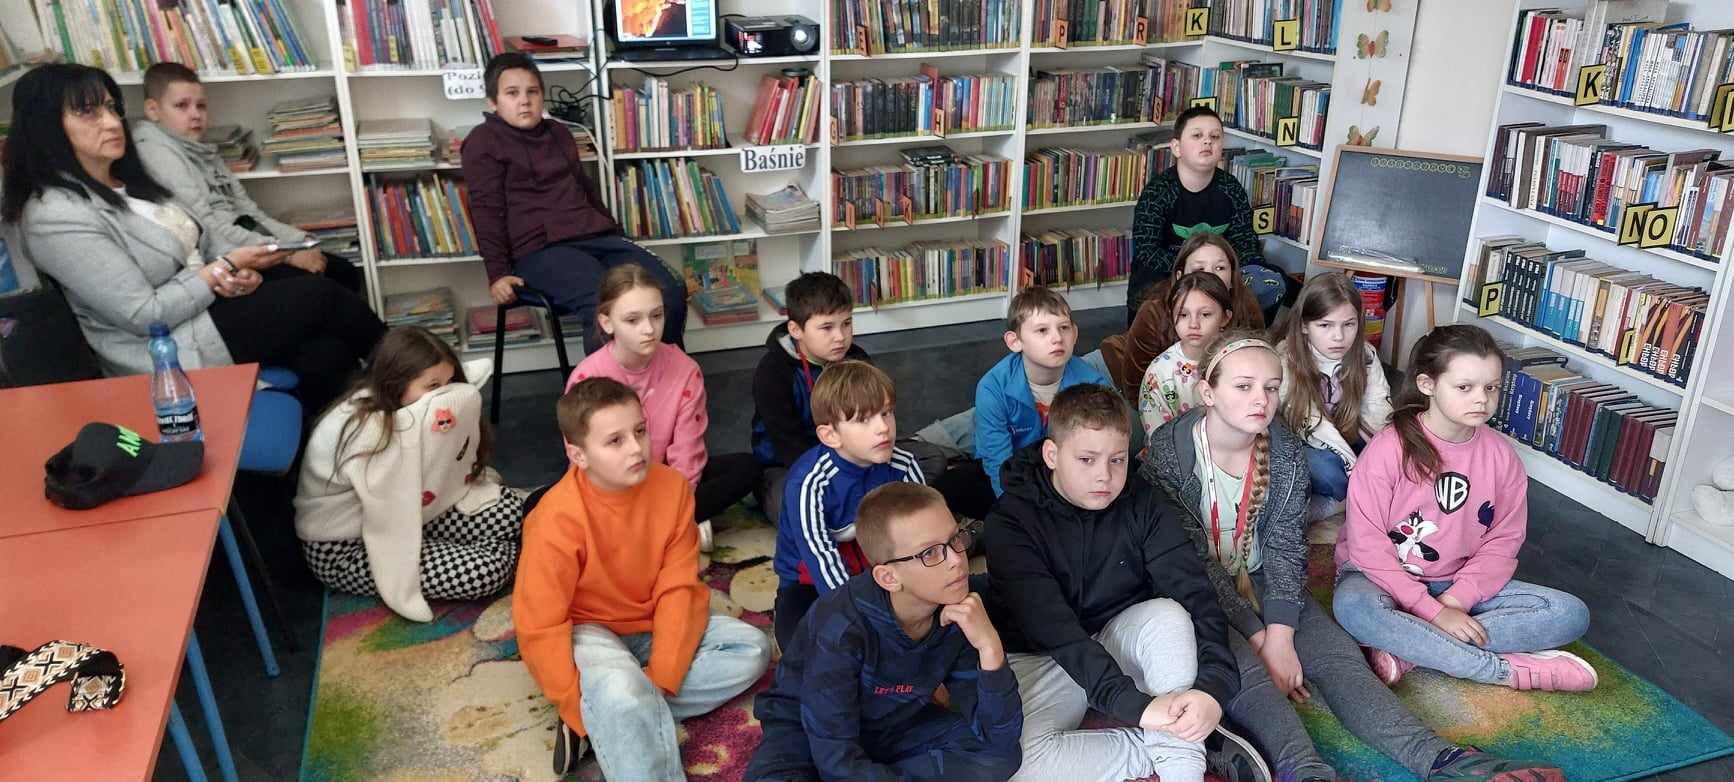 Grupa dzieci siedzi na podłodze w bibliotece, skupiając uwagę na przedniej części pomieszczenia. Po lewej stronie siedzi dorosła osoba.